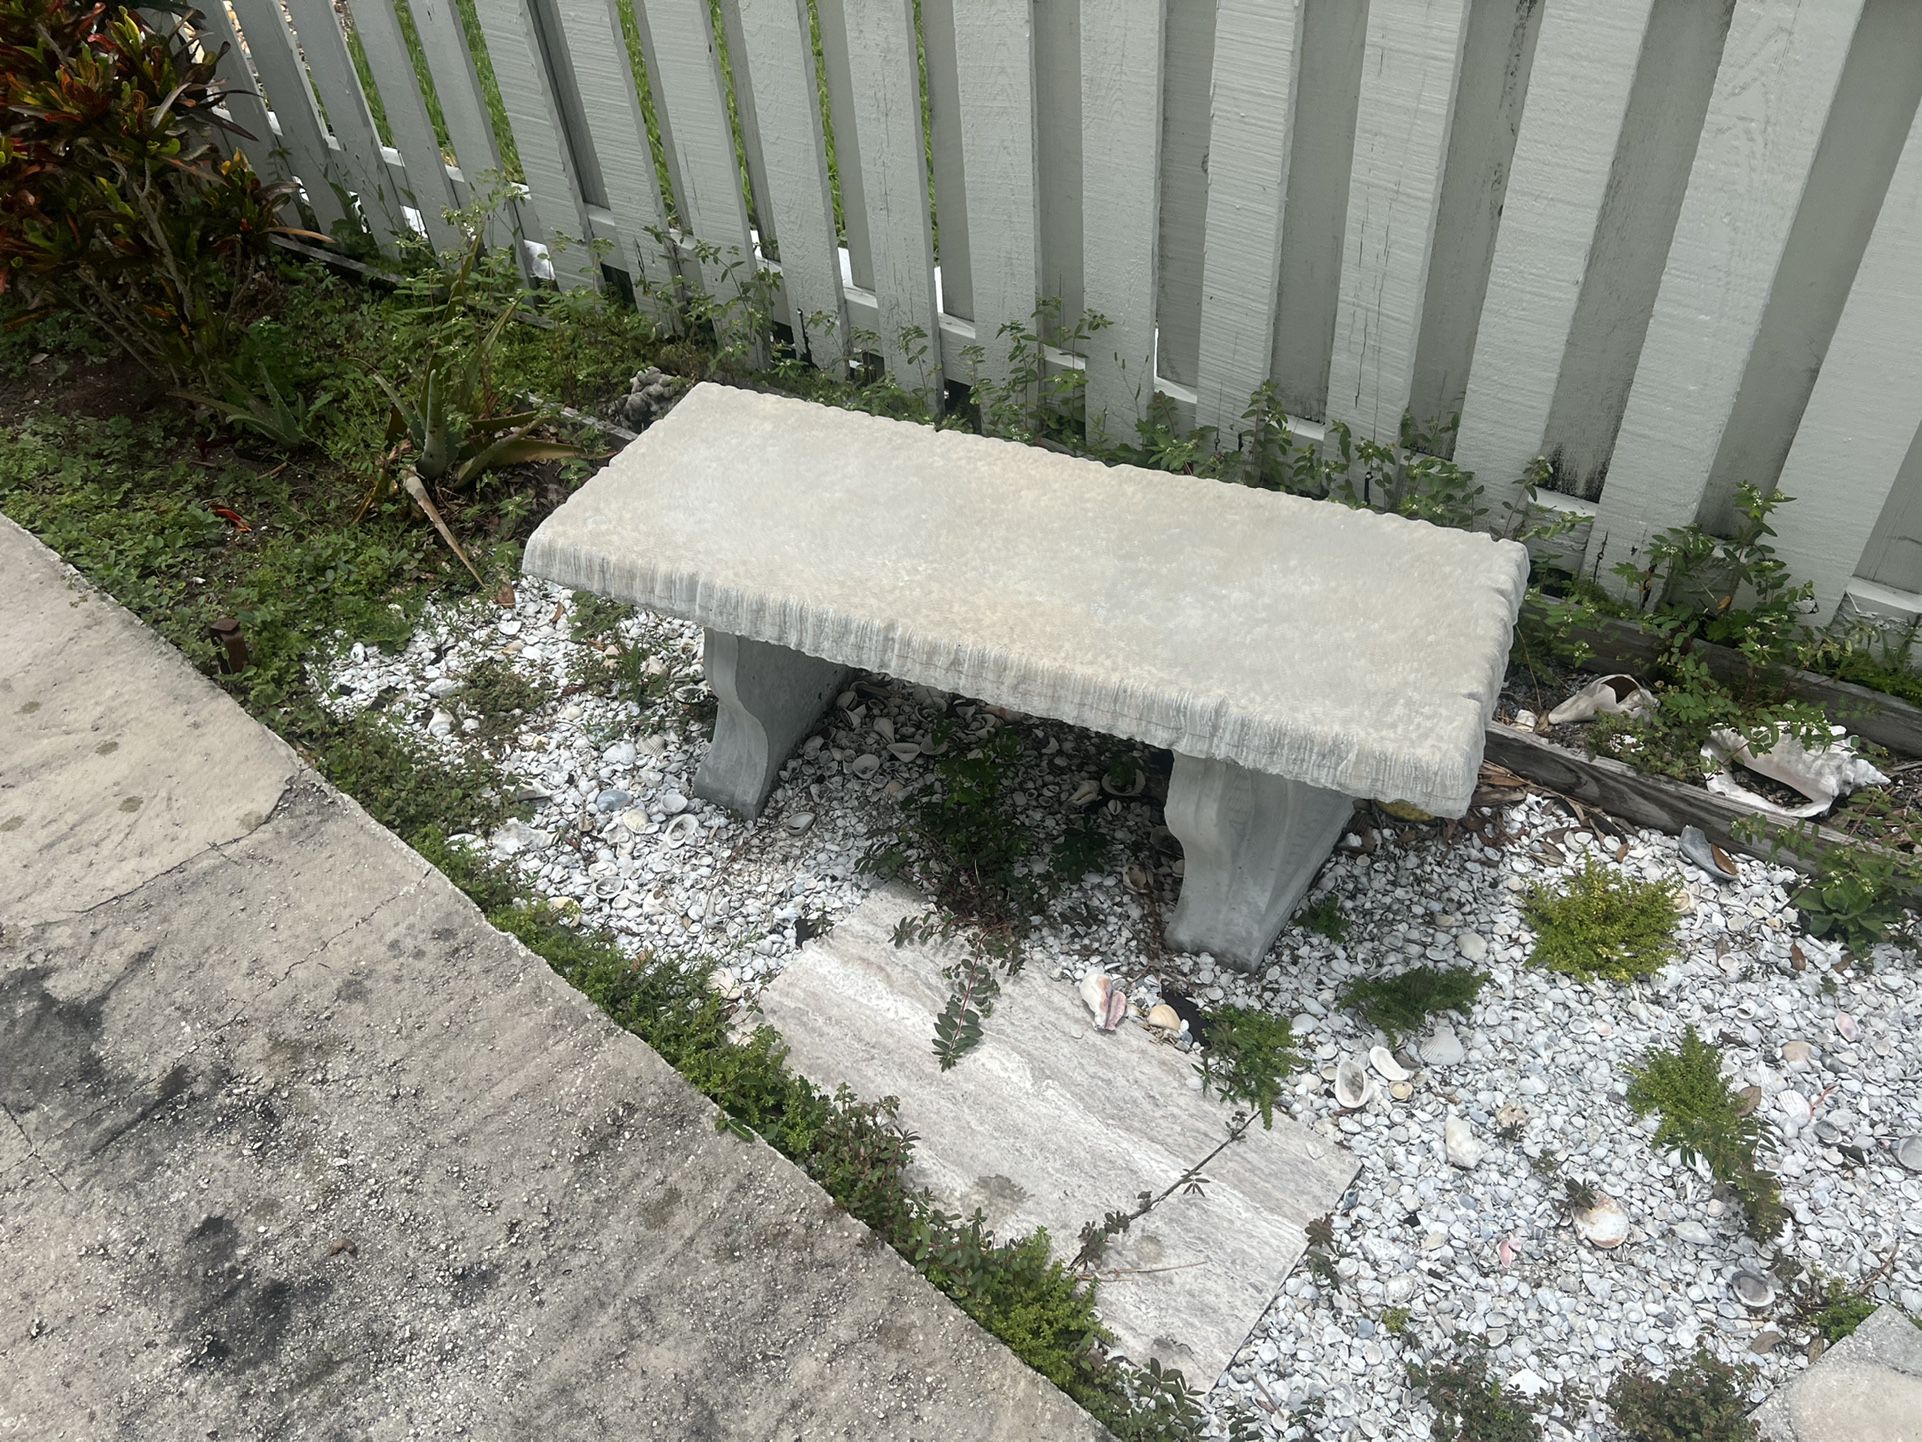 Two Concrete garden benches